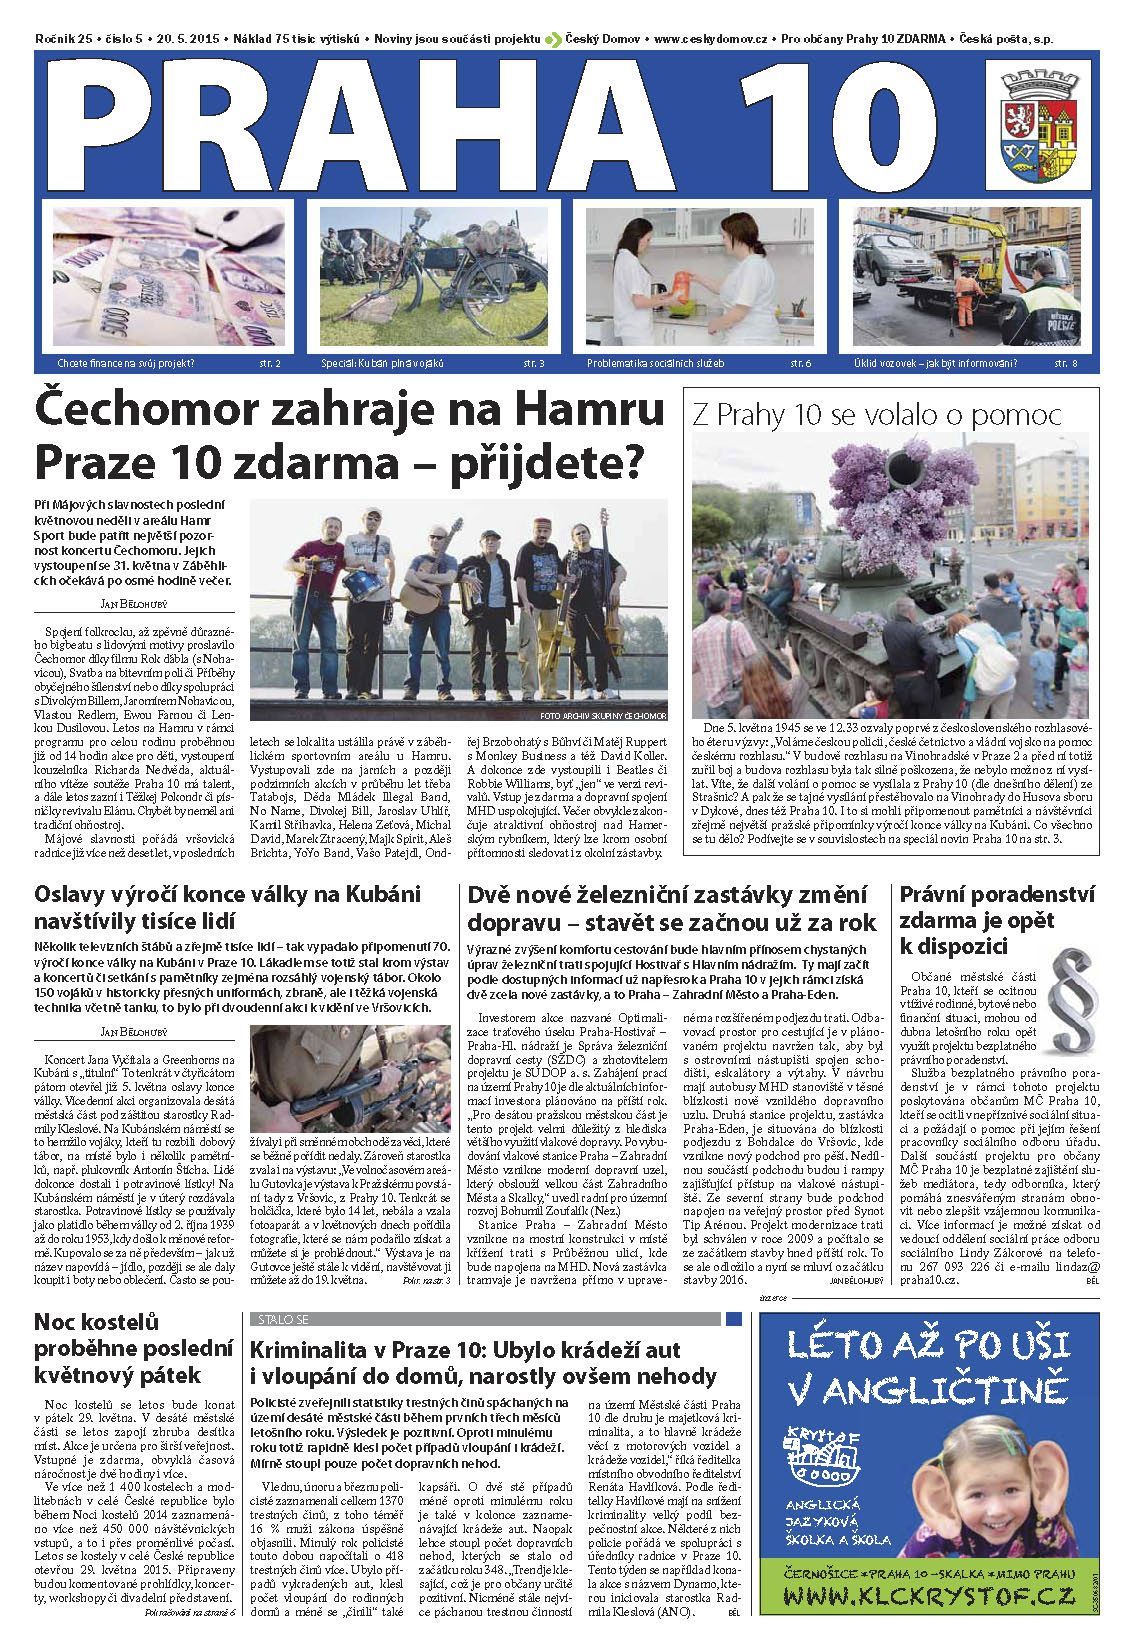 Praha 10 - radniční noviny